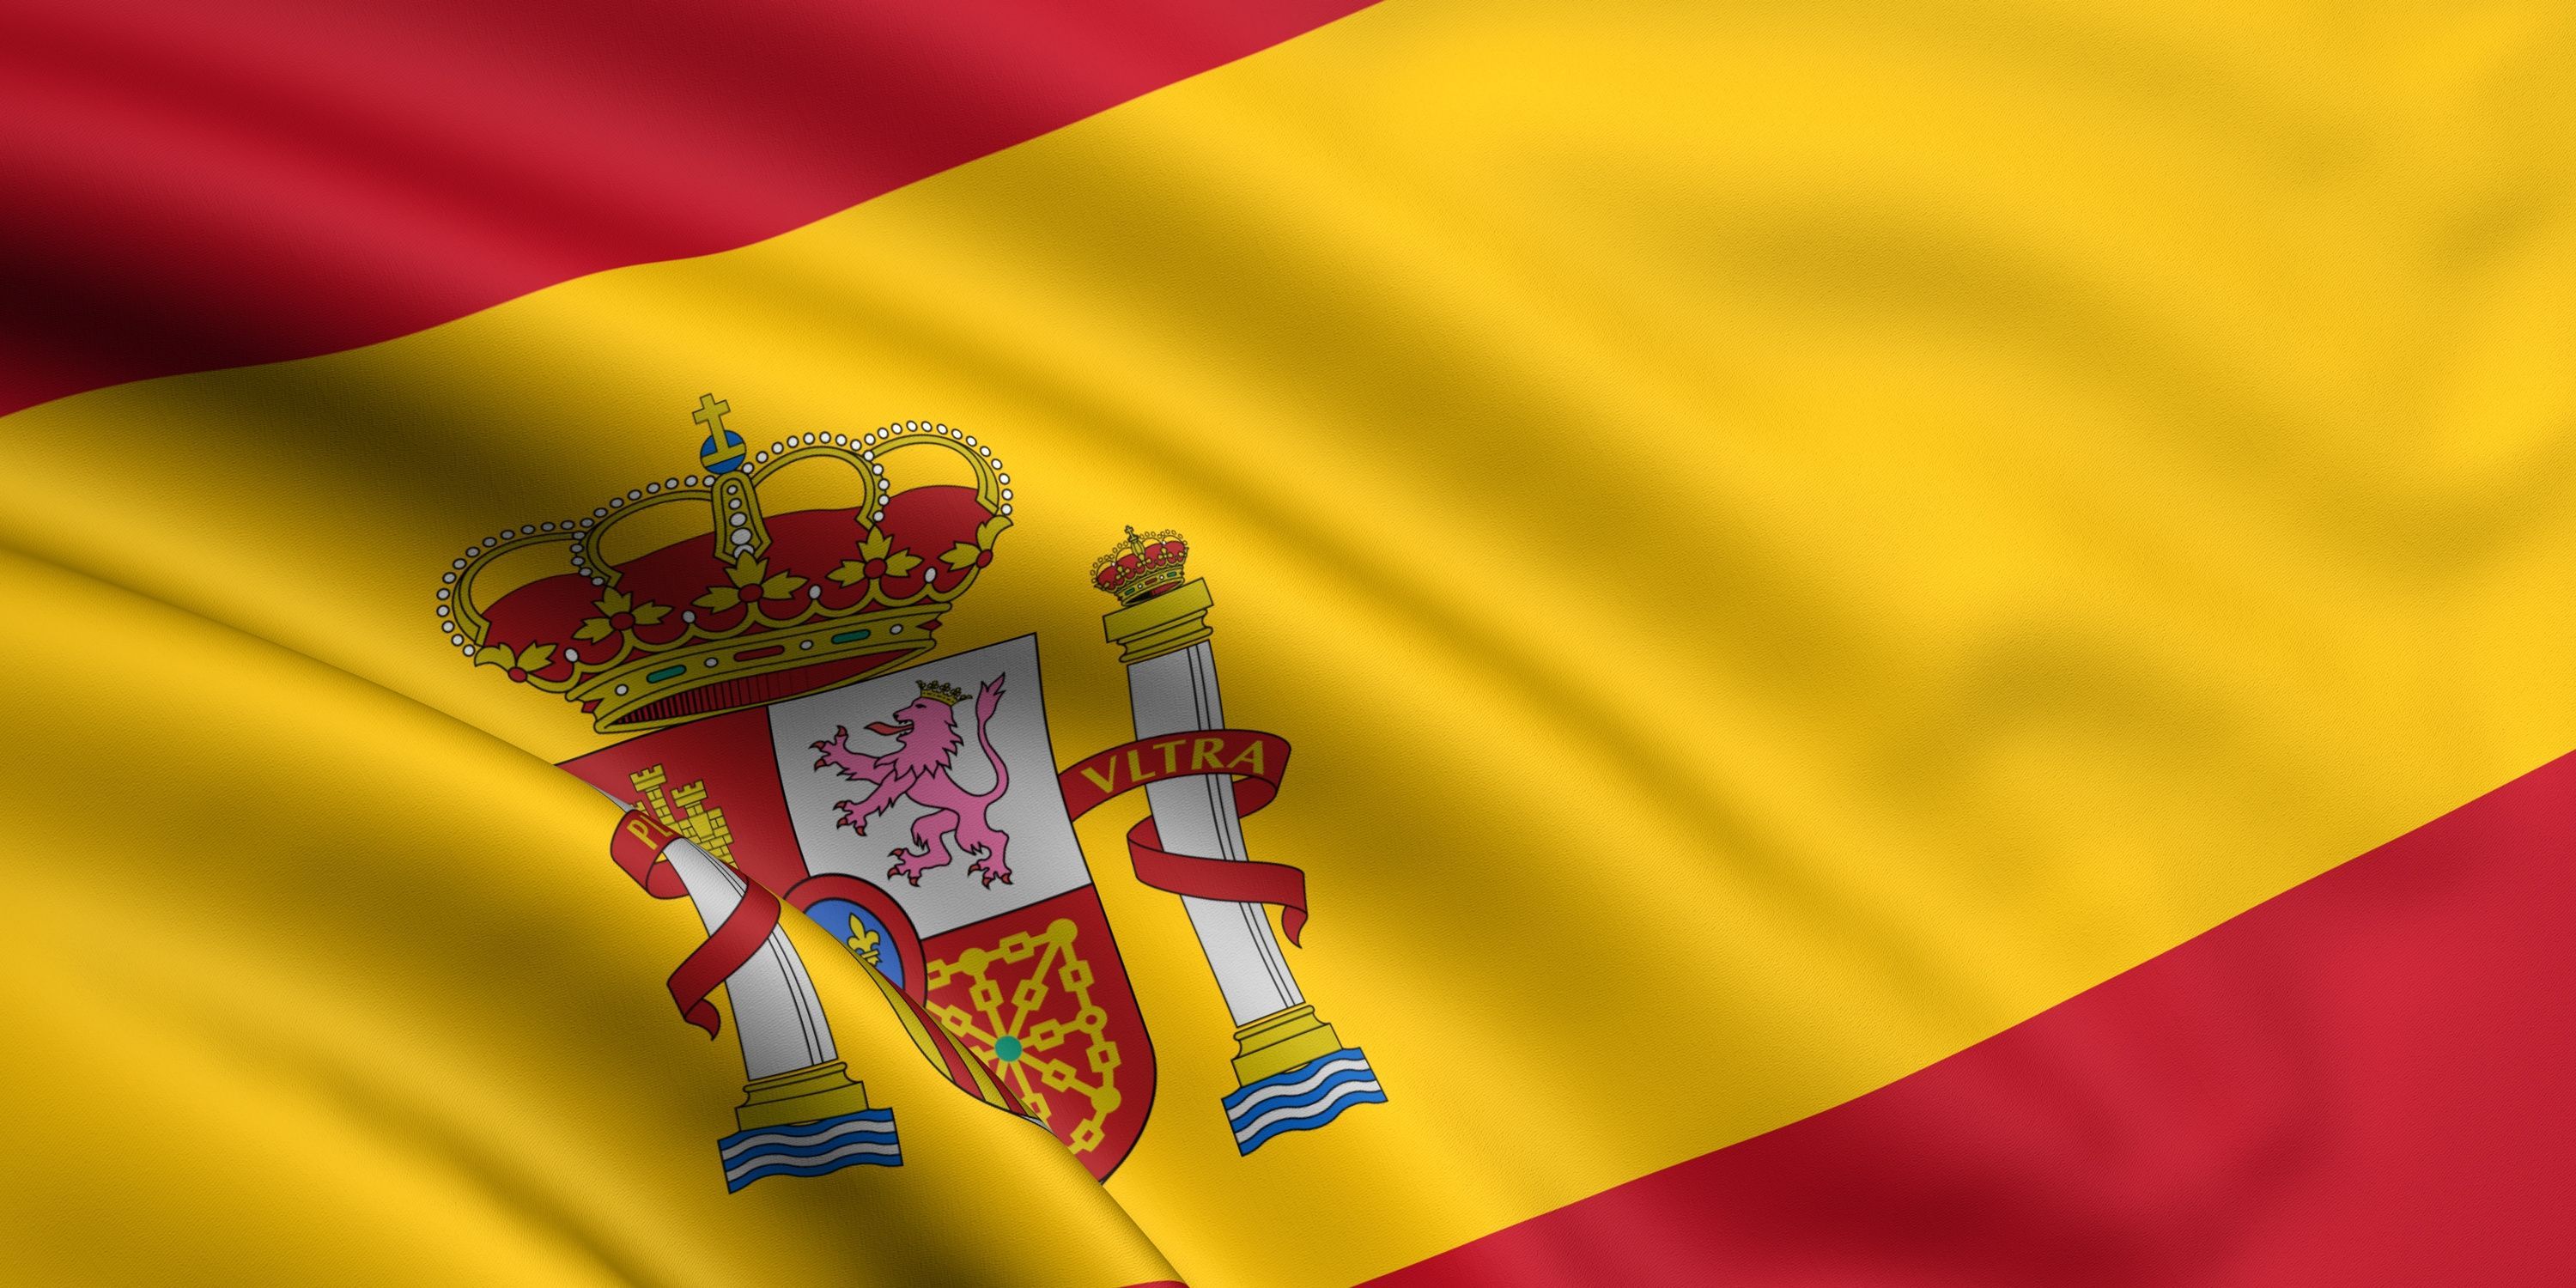 Fondos de tema en español - Los mejores fondos de tema en español gratis